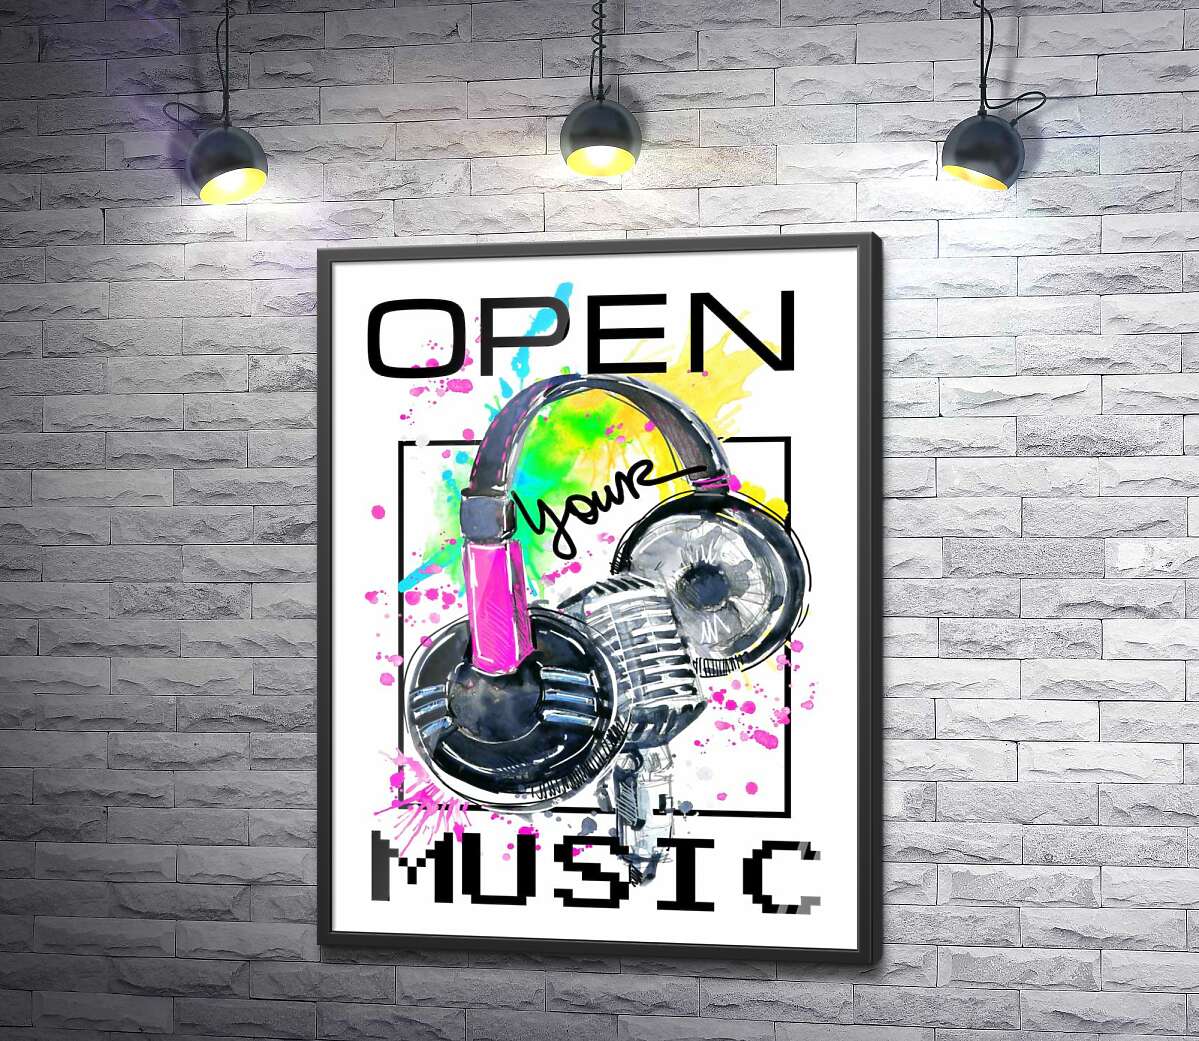 постер Наушники и микрофон на брызгах желто-зеленого фона с надписью "open your music"